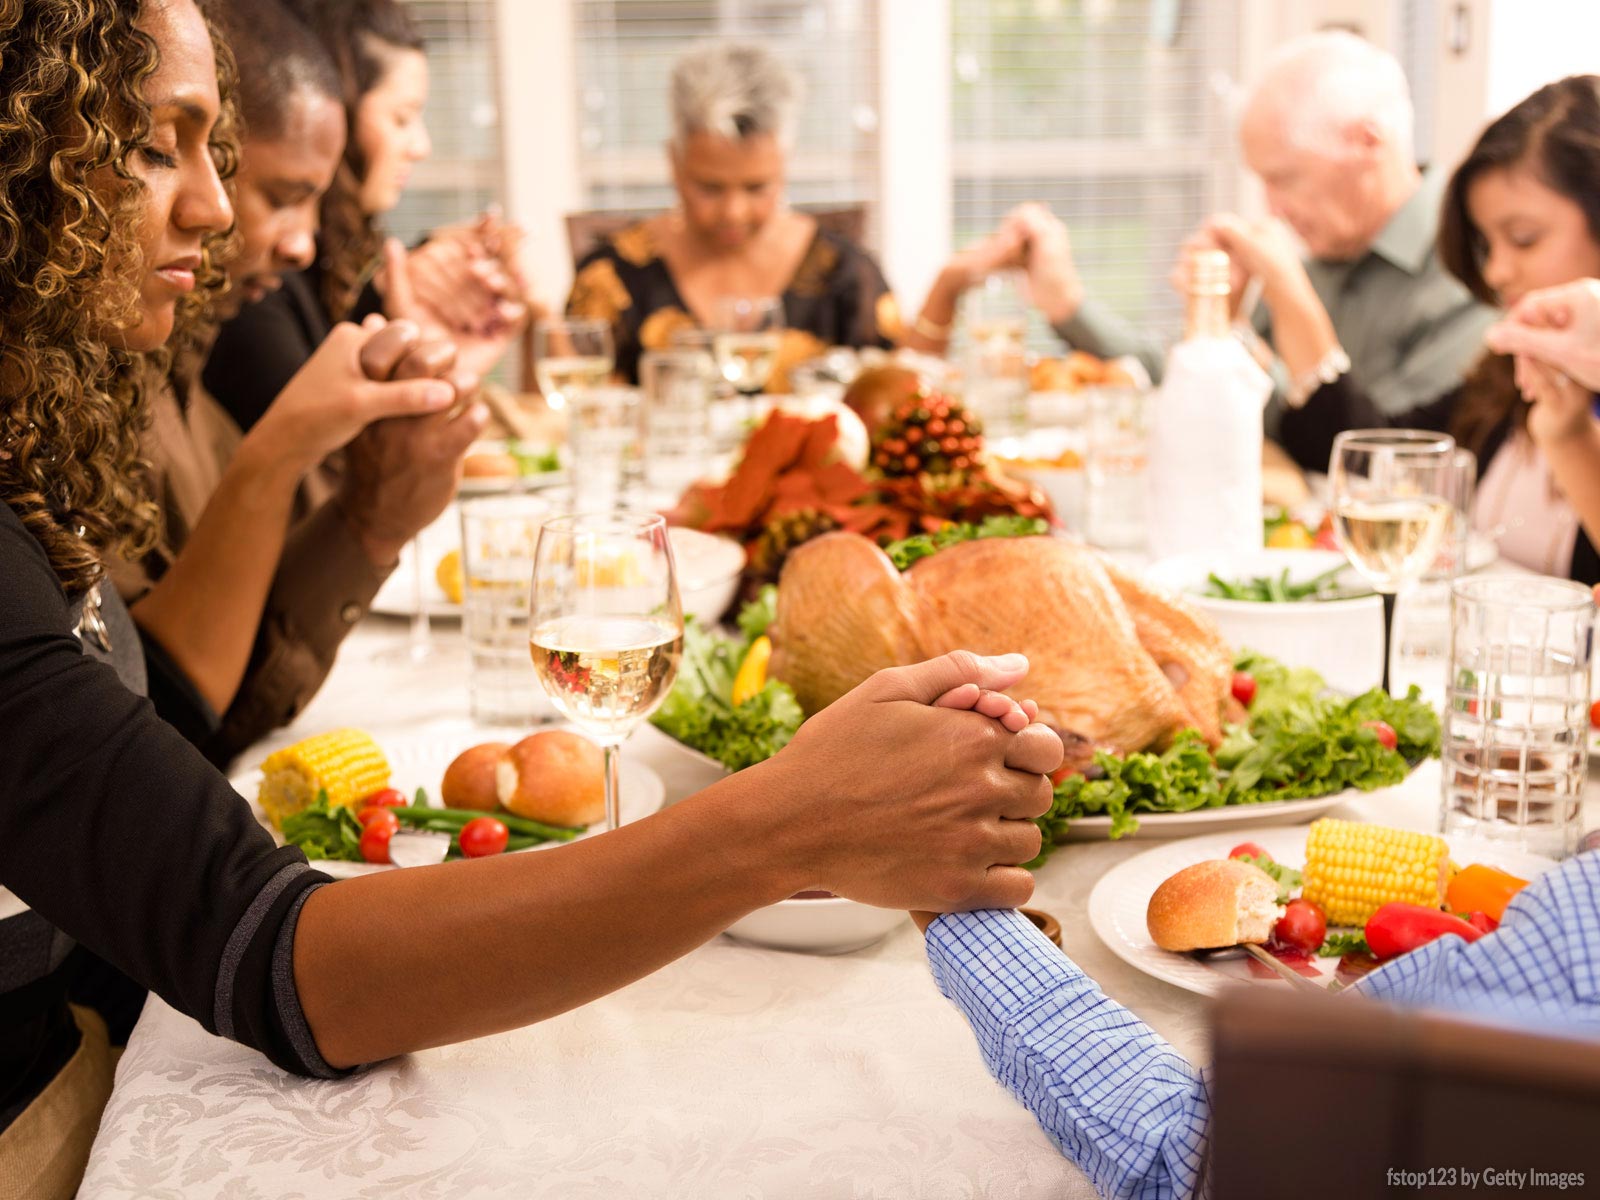 Thanksgiving Day: O que é e o que significa o Dia de Ação de